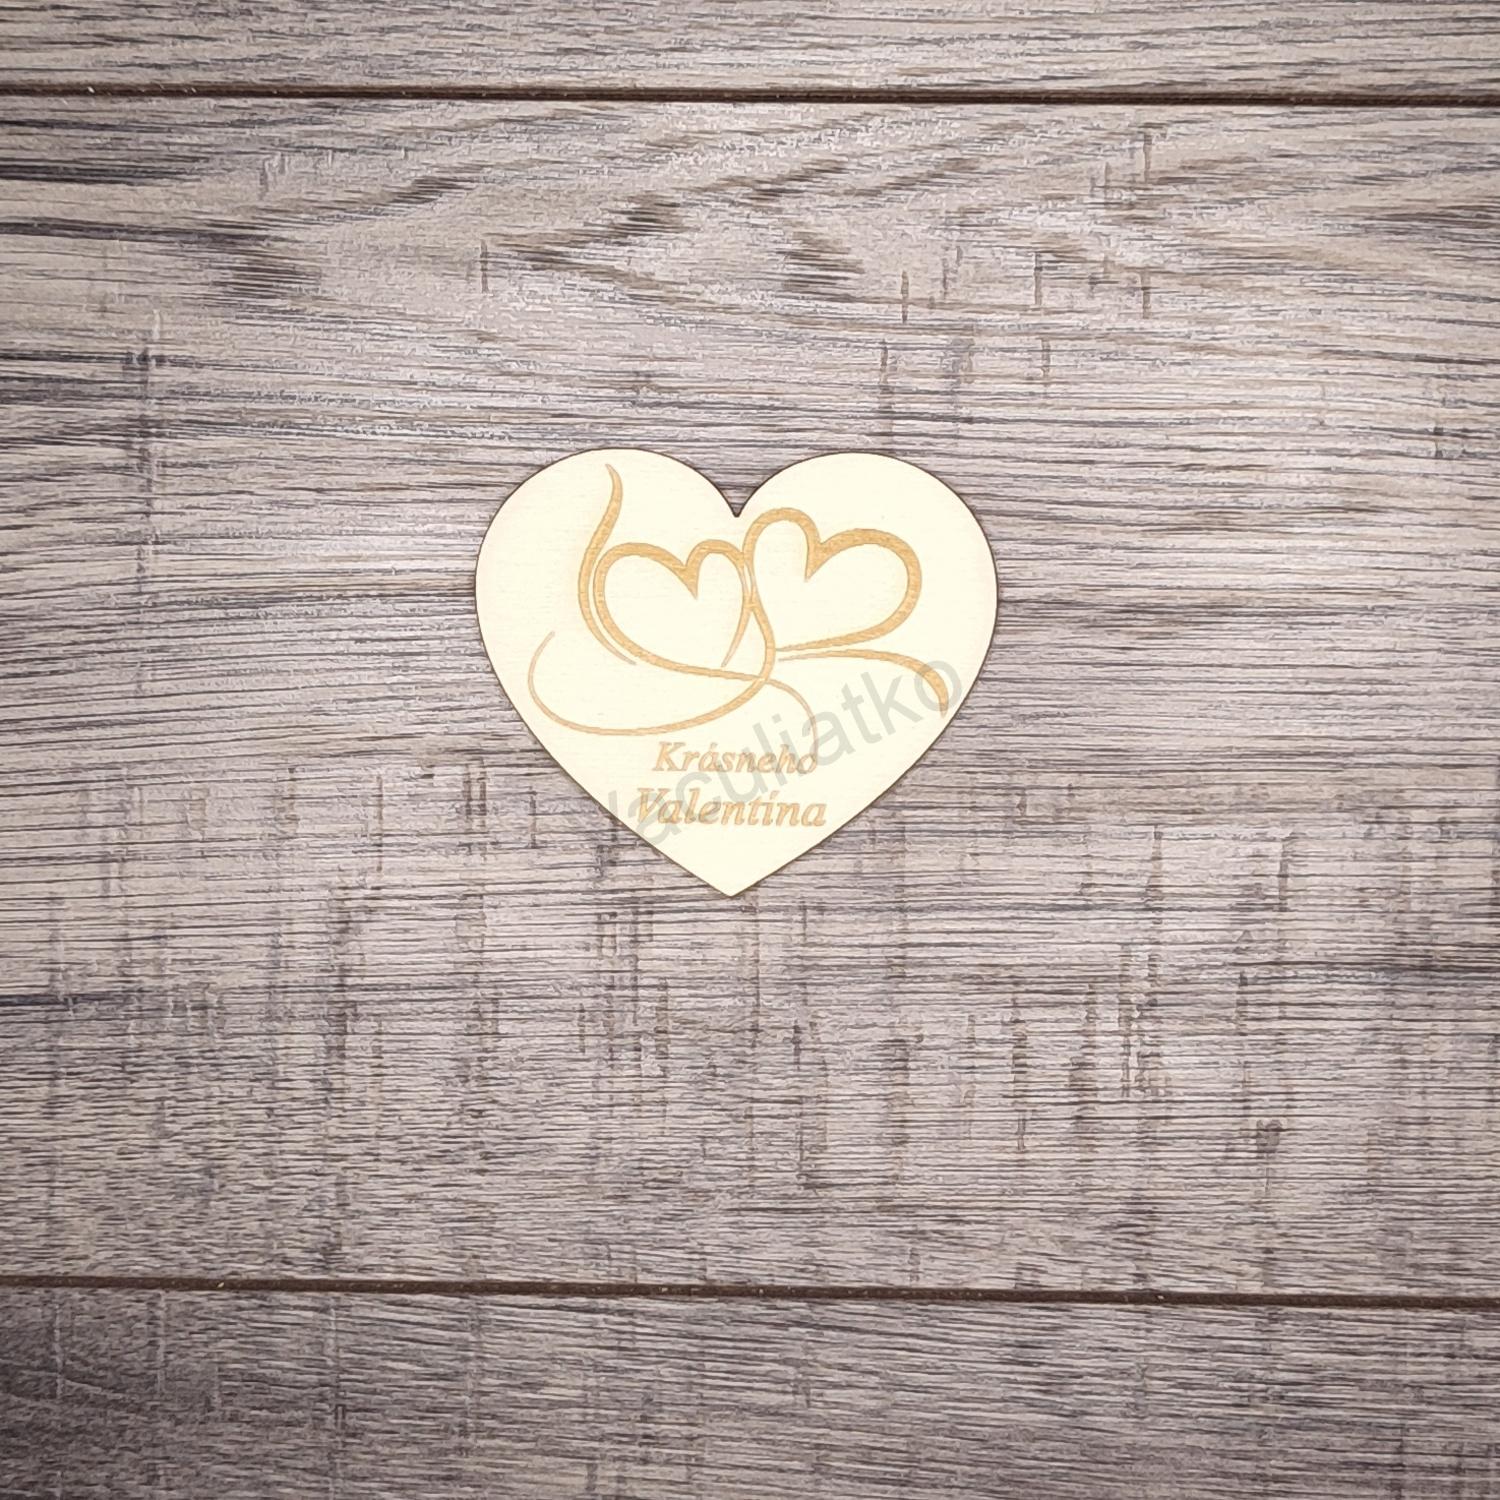 Srdce s textom 7x6cm - Krásneho Valentína (srdcia v1)